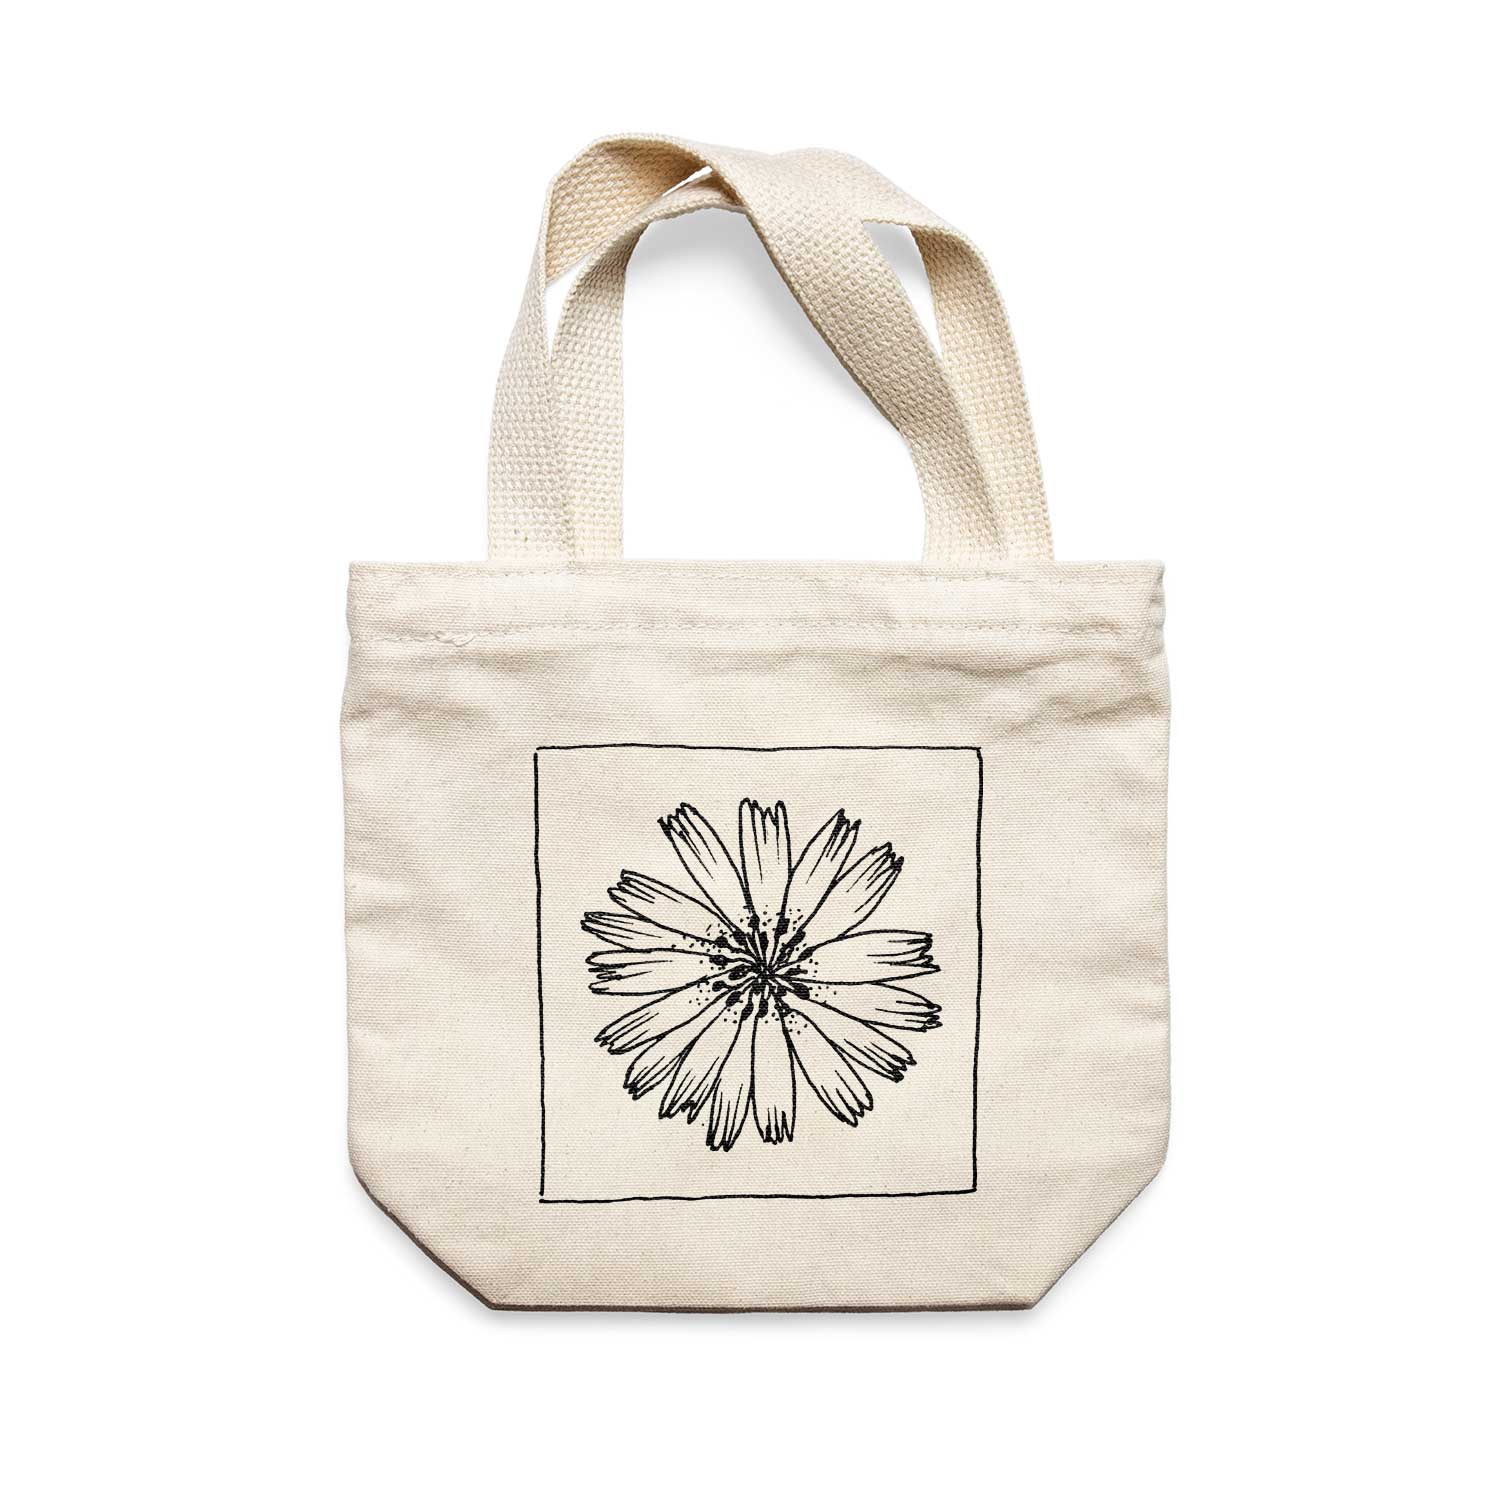 תיק צד לנשים וגברים מבד 100% כותנה טבעית בעיצוב Flower - Addison Tote Bag מציור מקורי של גאיה